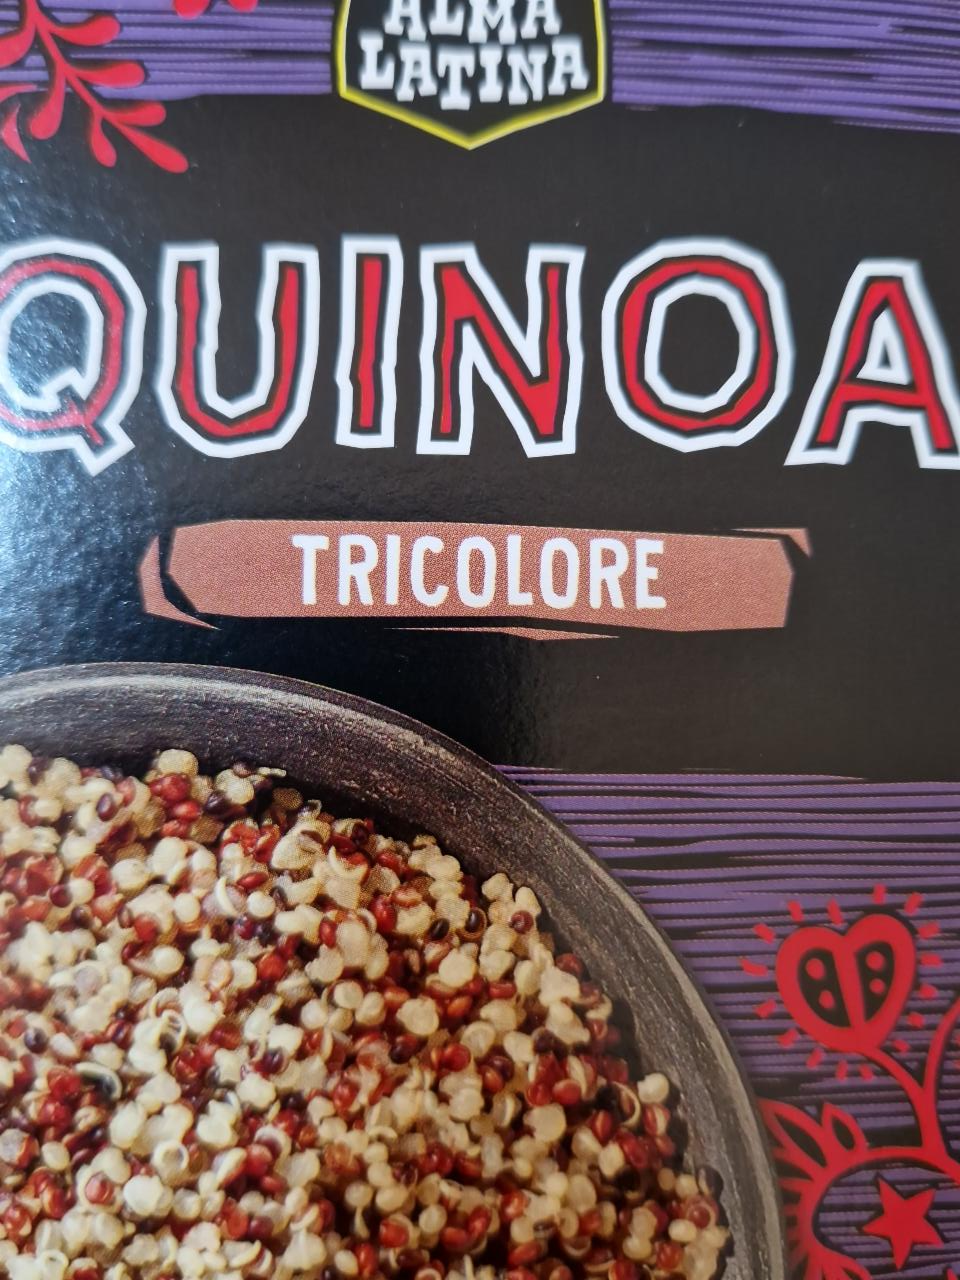 Fotografie - Quinoa tricolore Alma Latina